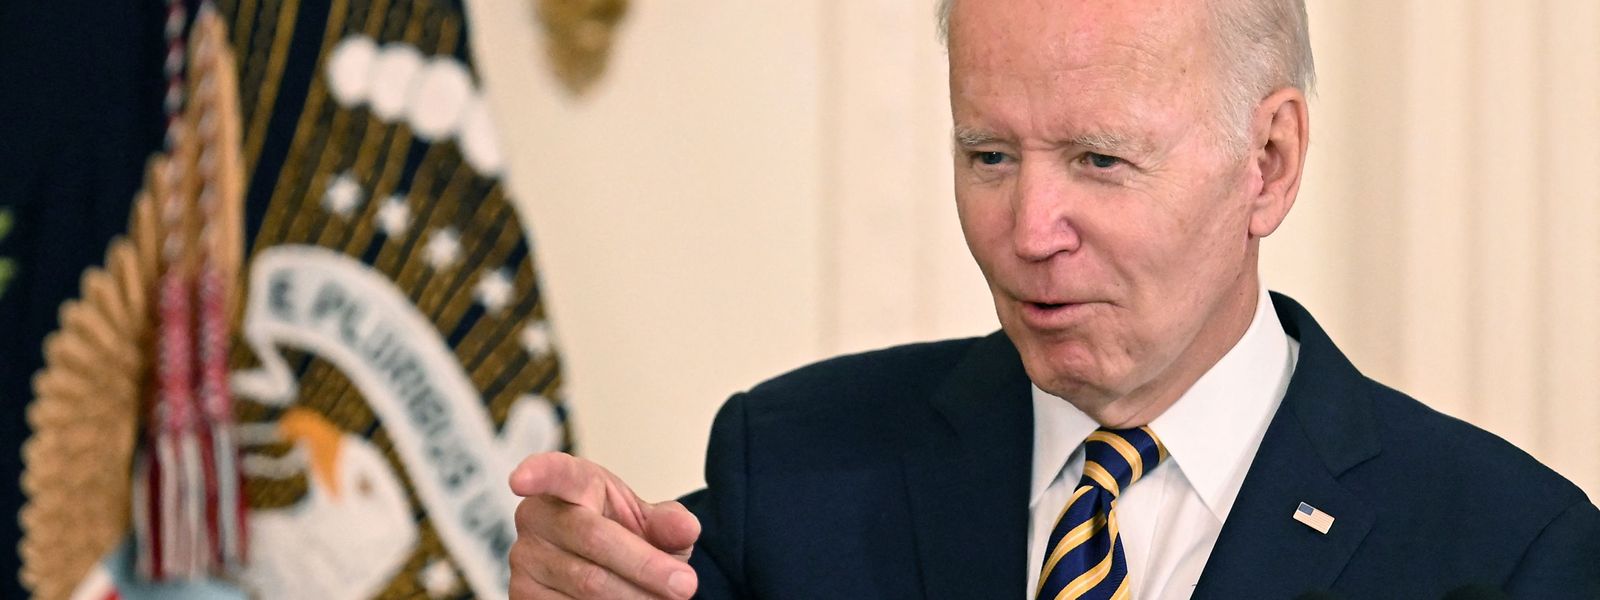 Joe Biden sprach von einer „historischen Gesetzgebung“.